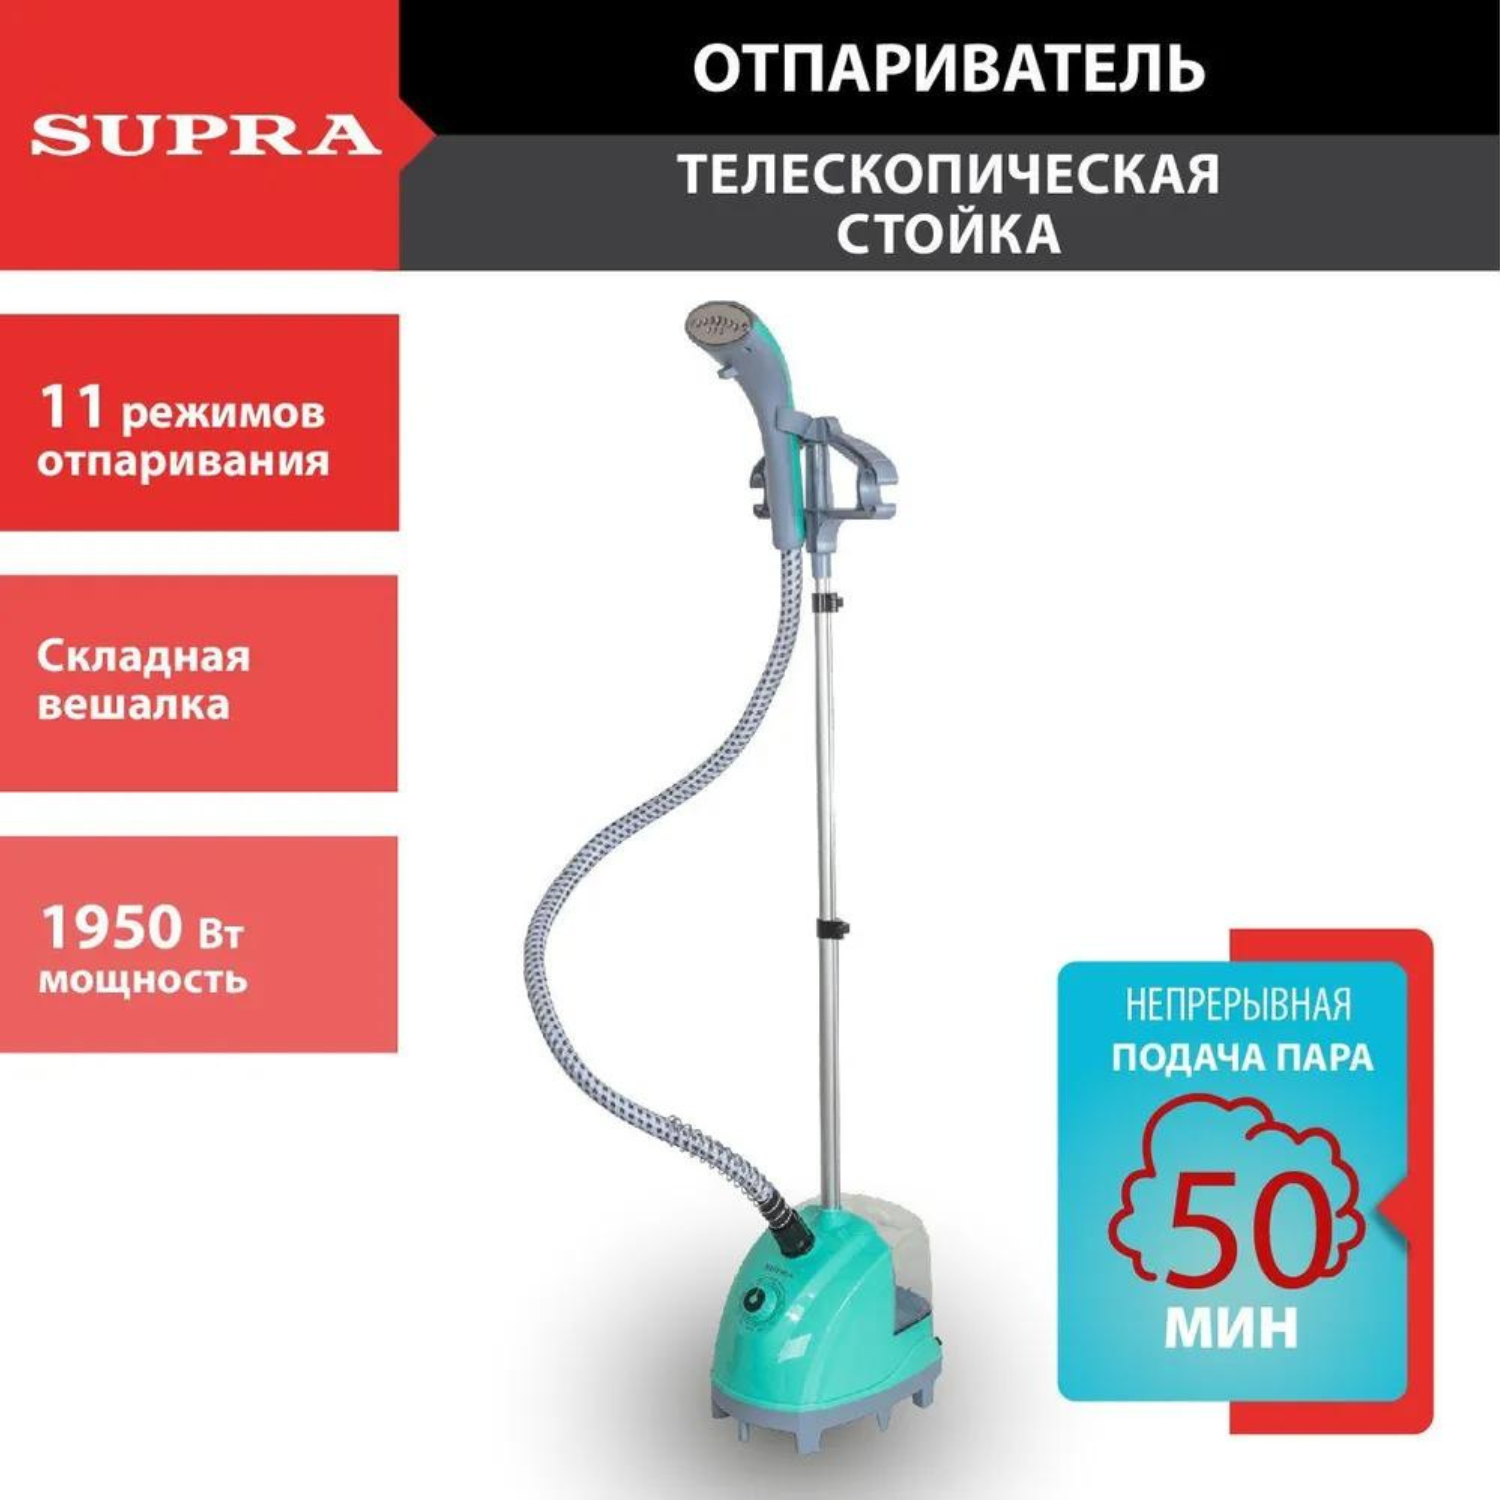 Вертикальный отпариватель Supra SBS-170 1.3 л голубой вертикальный отпариватель kitfort kt 9156 3 л голубой